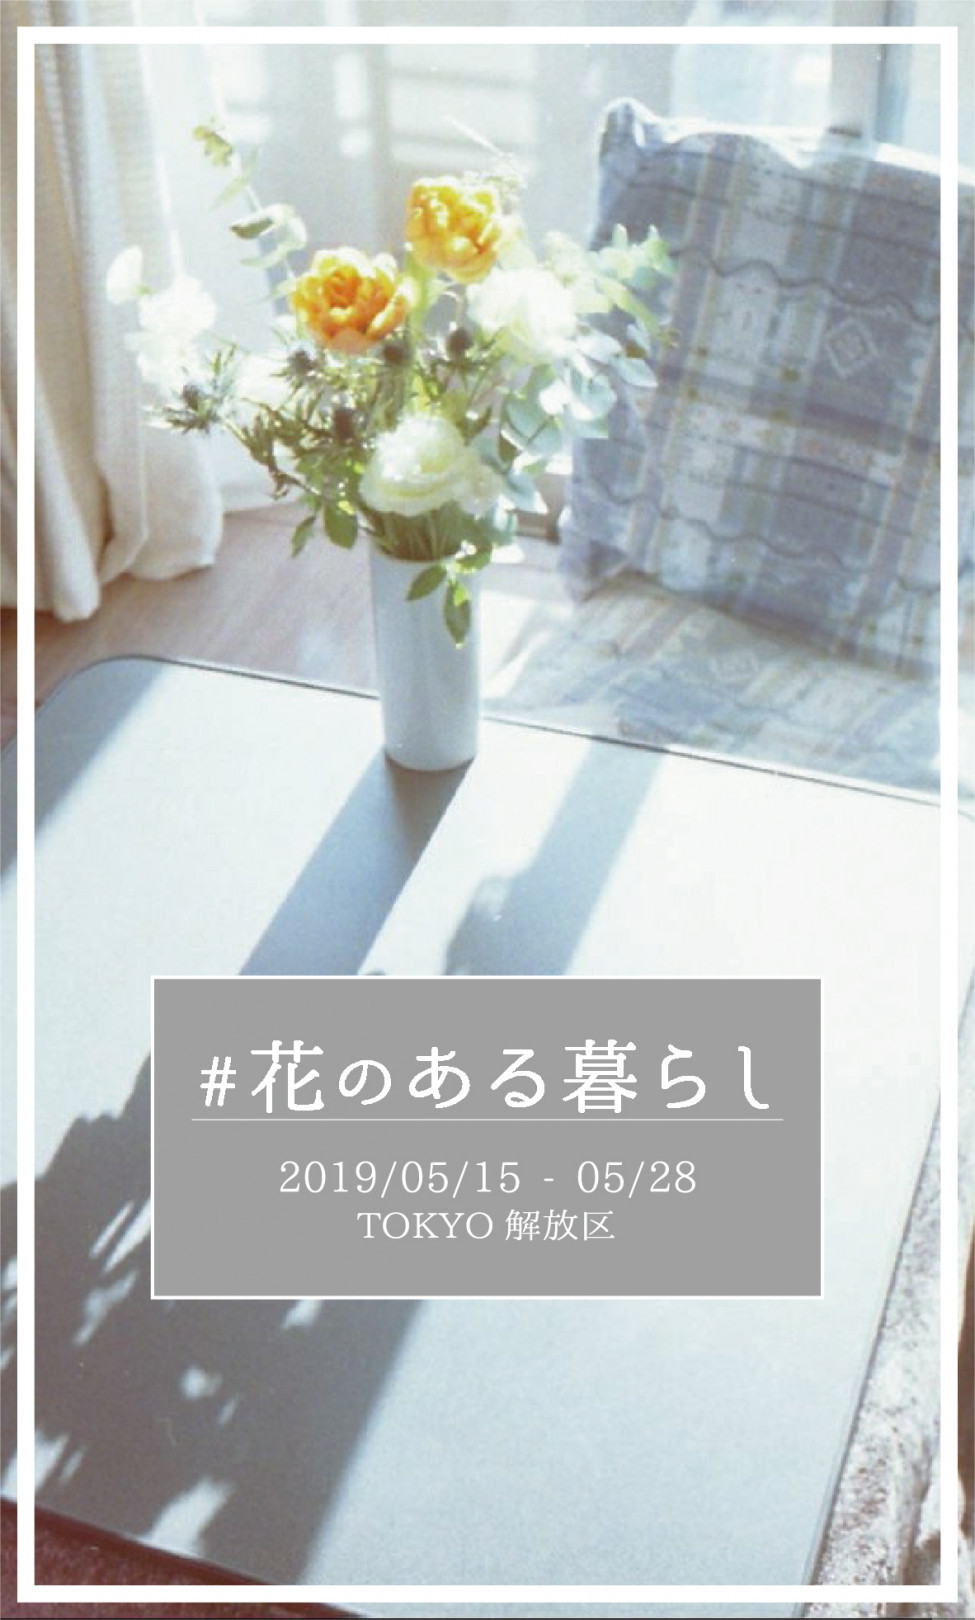 新宿伊勢丹で、話題の花屋などがラインアップするポップアップイベント「＃花のある暮らし」を開催